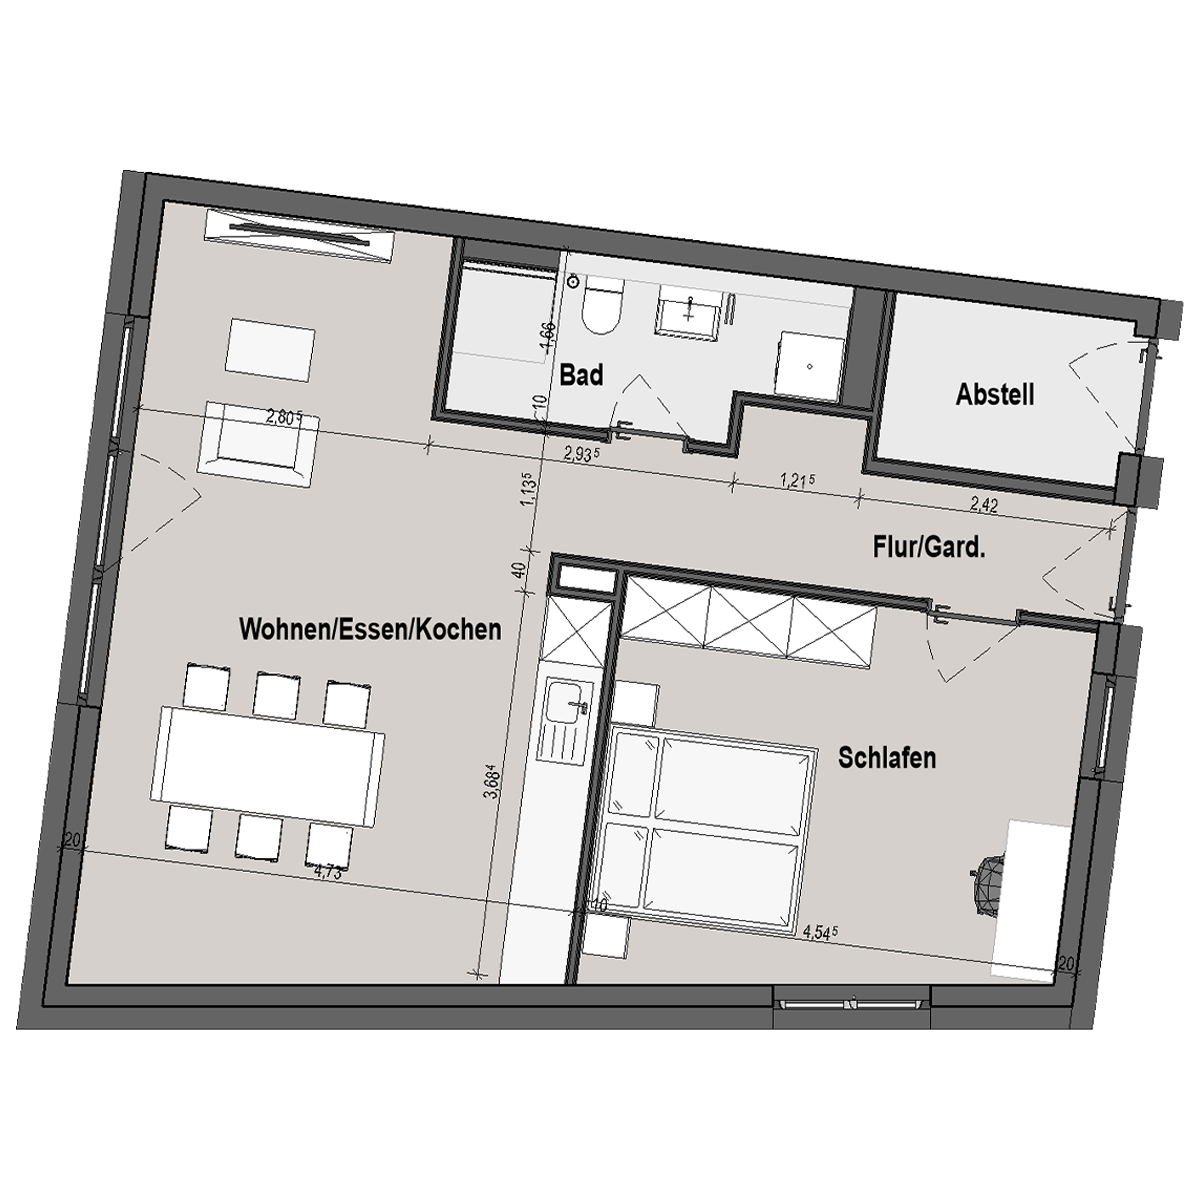 BF12 Landau Bauteil D 2 Zimmer-Wohnung Muster